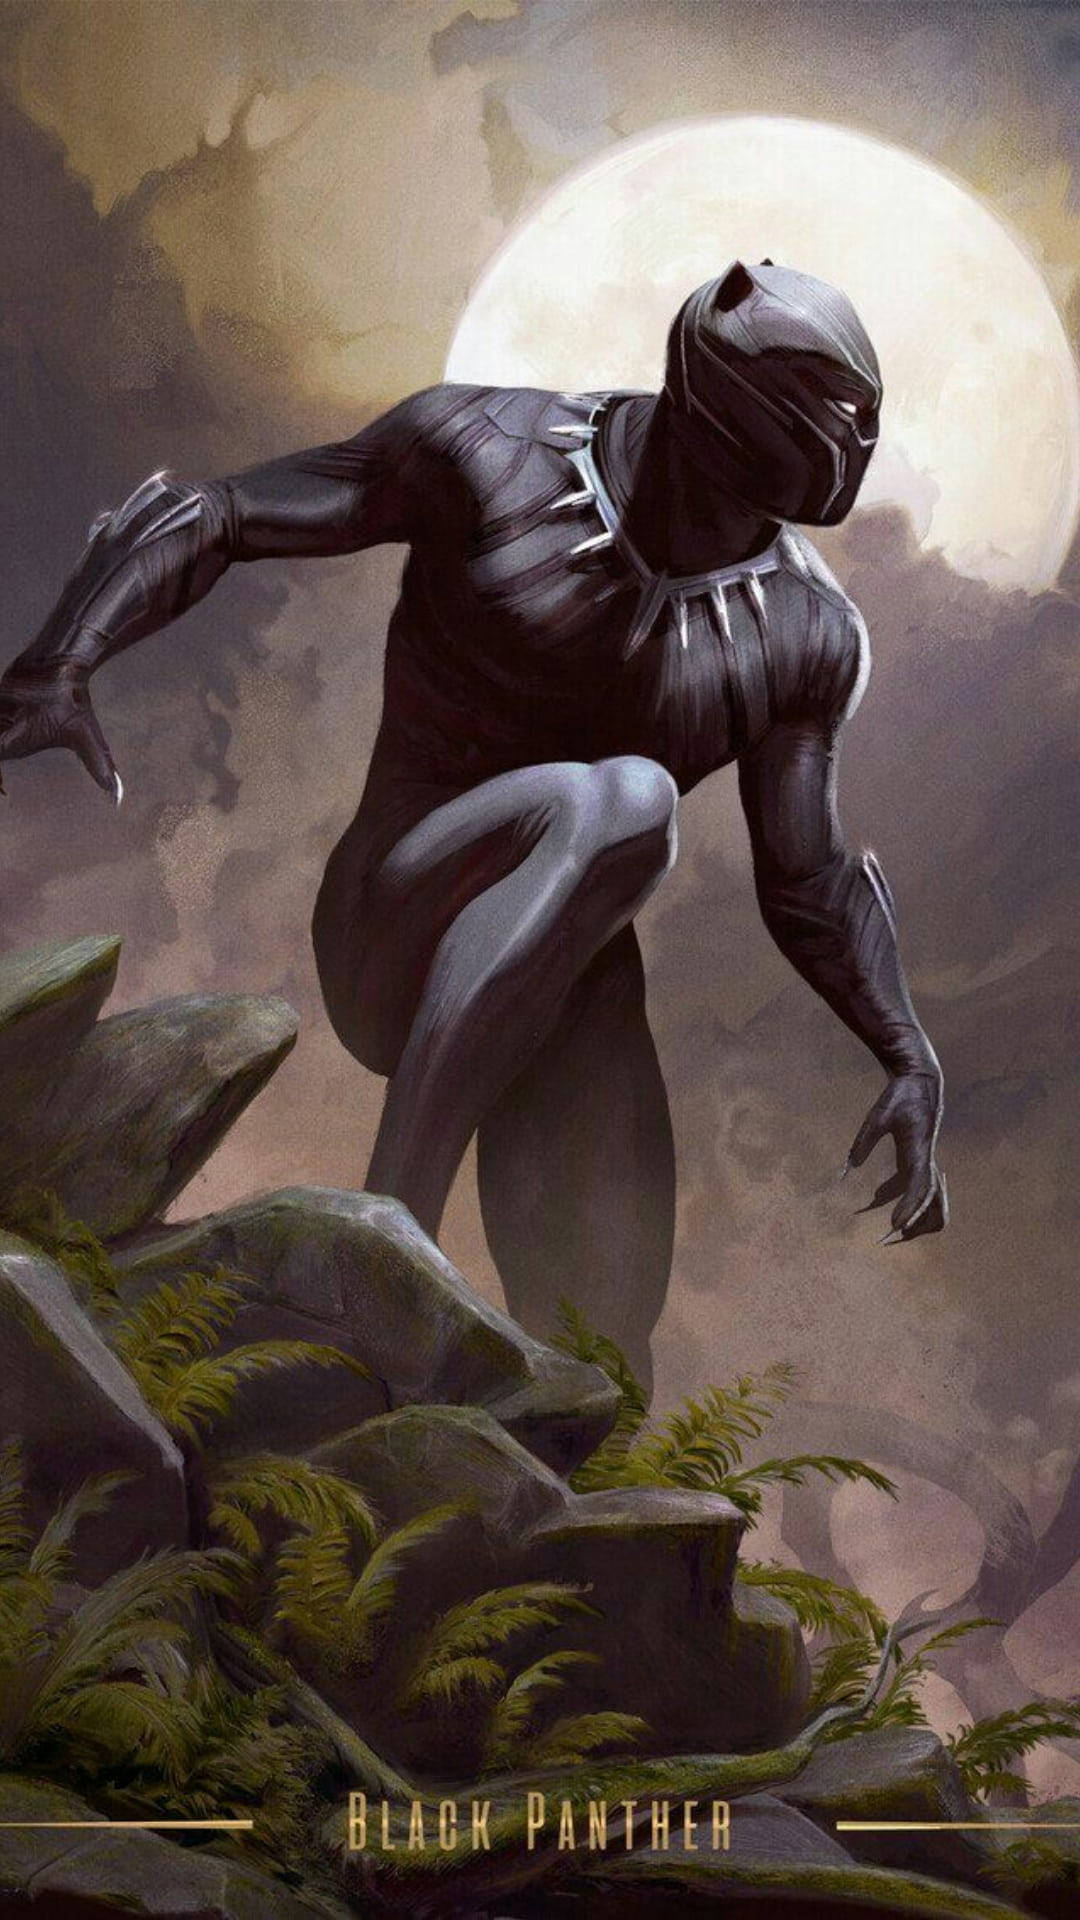 Drawn Black Panther Wakanda Forever Wallpaper